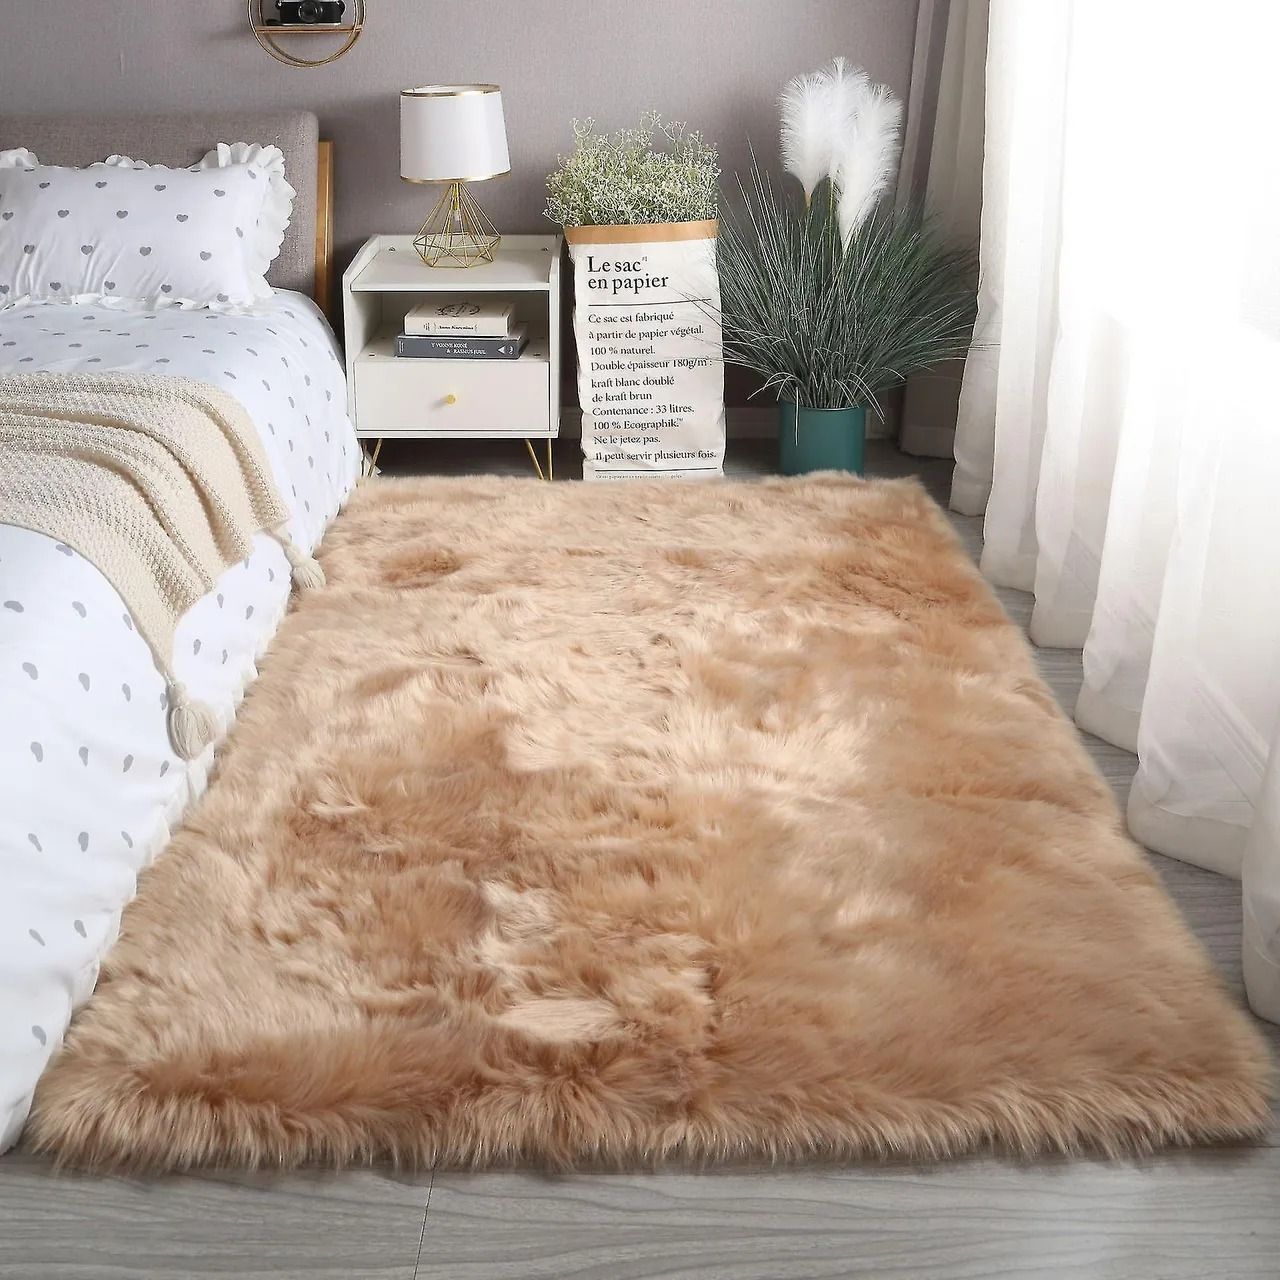 Phòng ngủ trở nên sang trọng hơn với sự xuất hiện của thảm lông